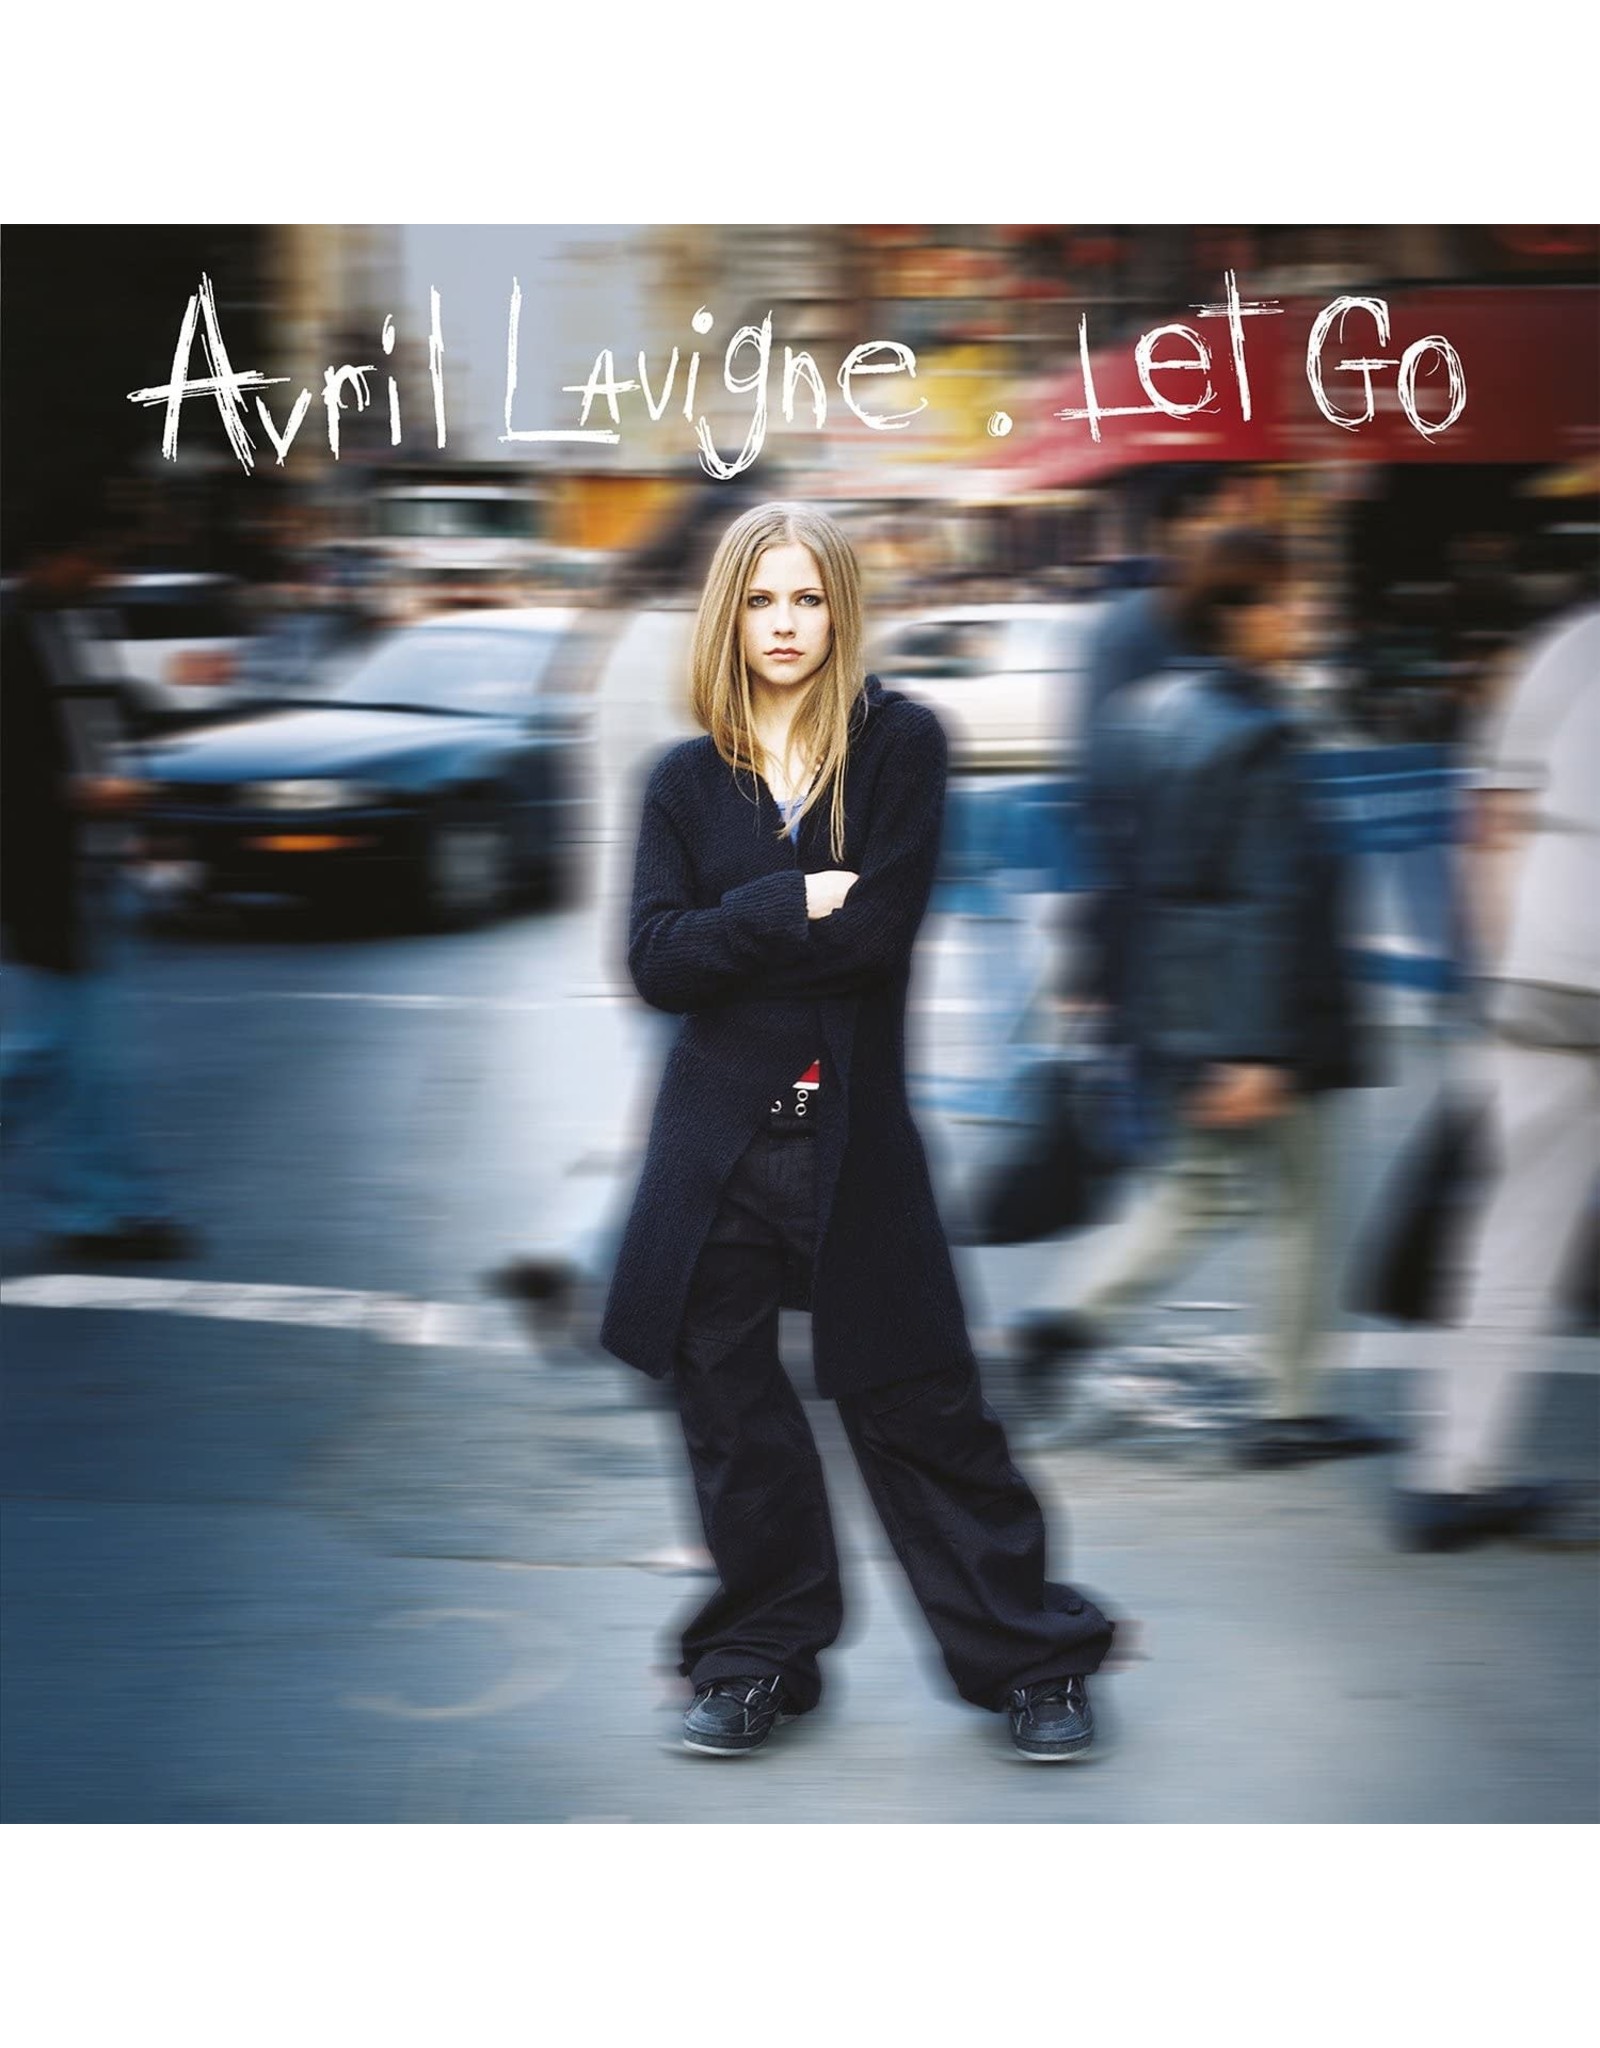 Avril Lavigne - Let Go (20th Anniversary)